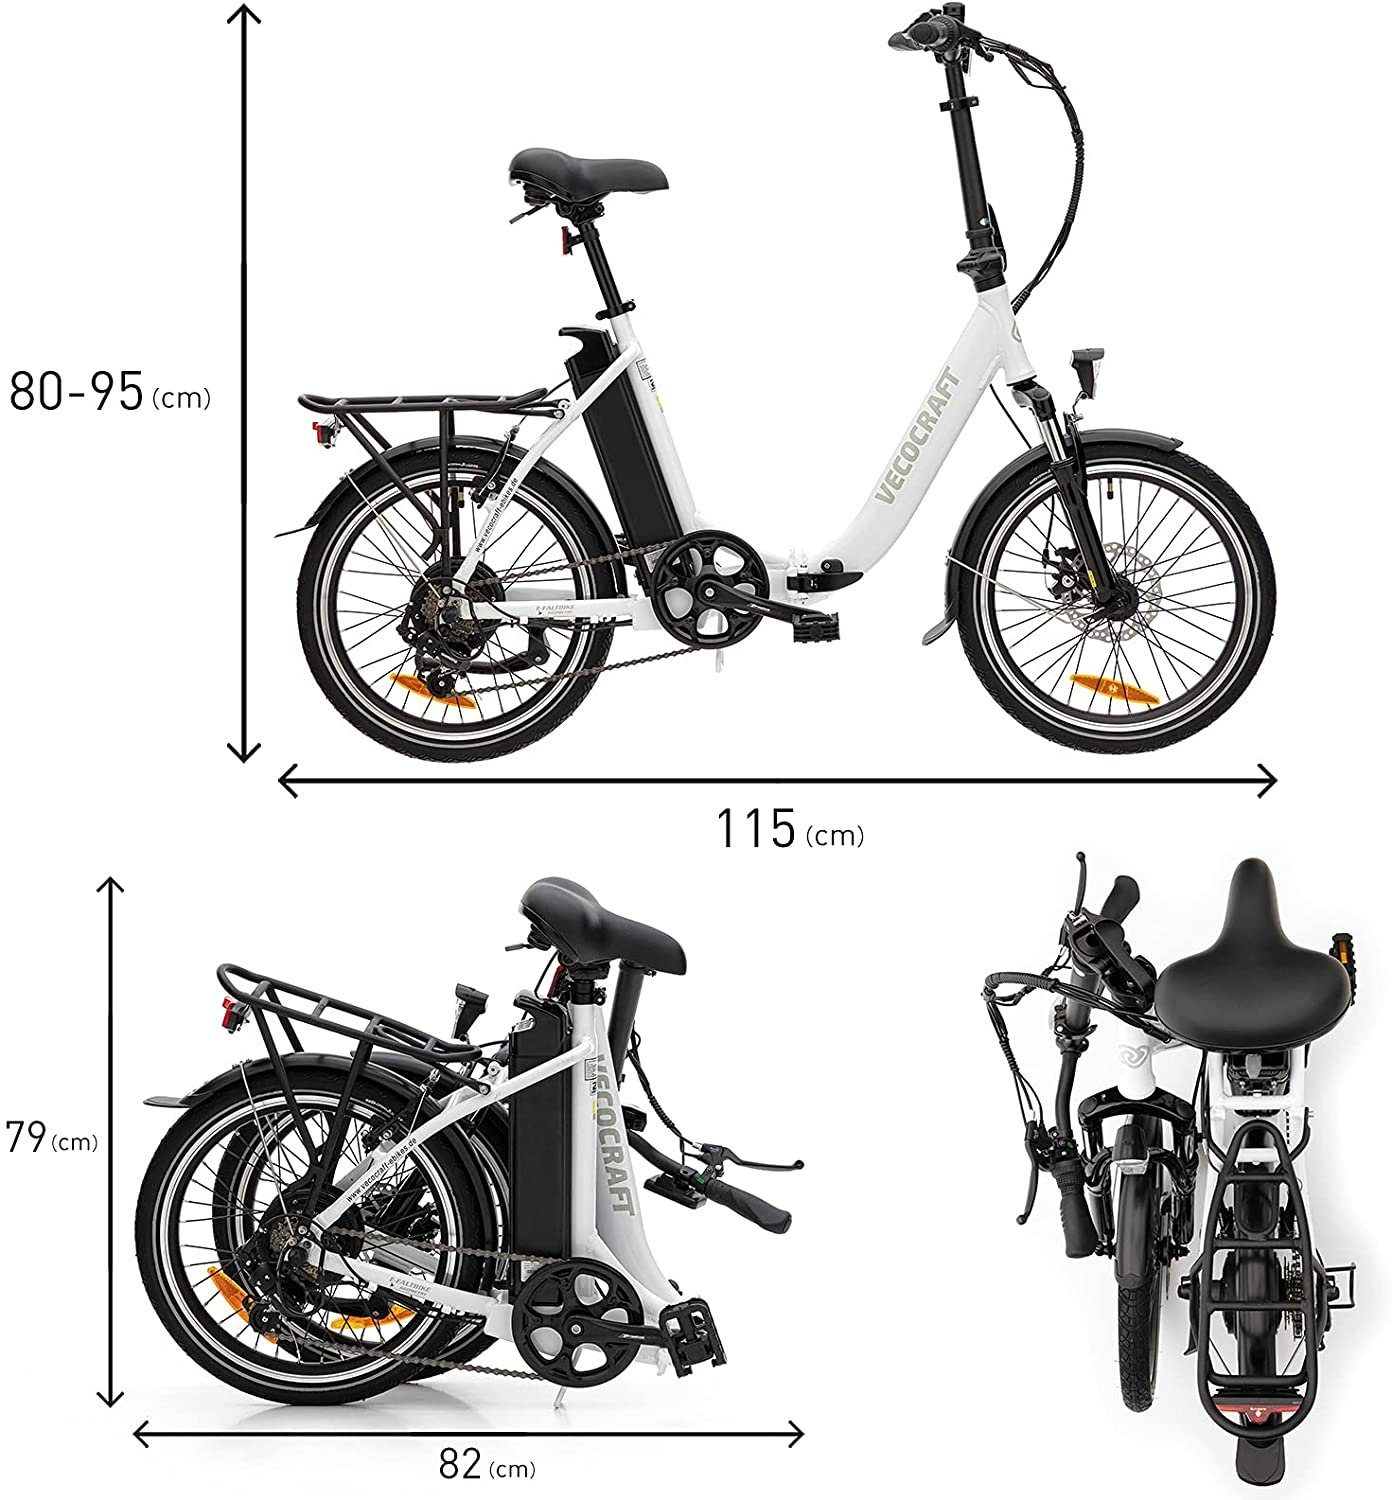 VECOCRAFT E-Bike Shimano Gang Heckmotor, Kettenschaltung, 13AH, Weiß Schaltwerk, Tournry 7 E-Pax Wh Akku 468,00